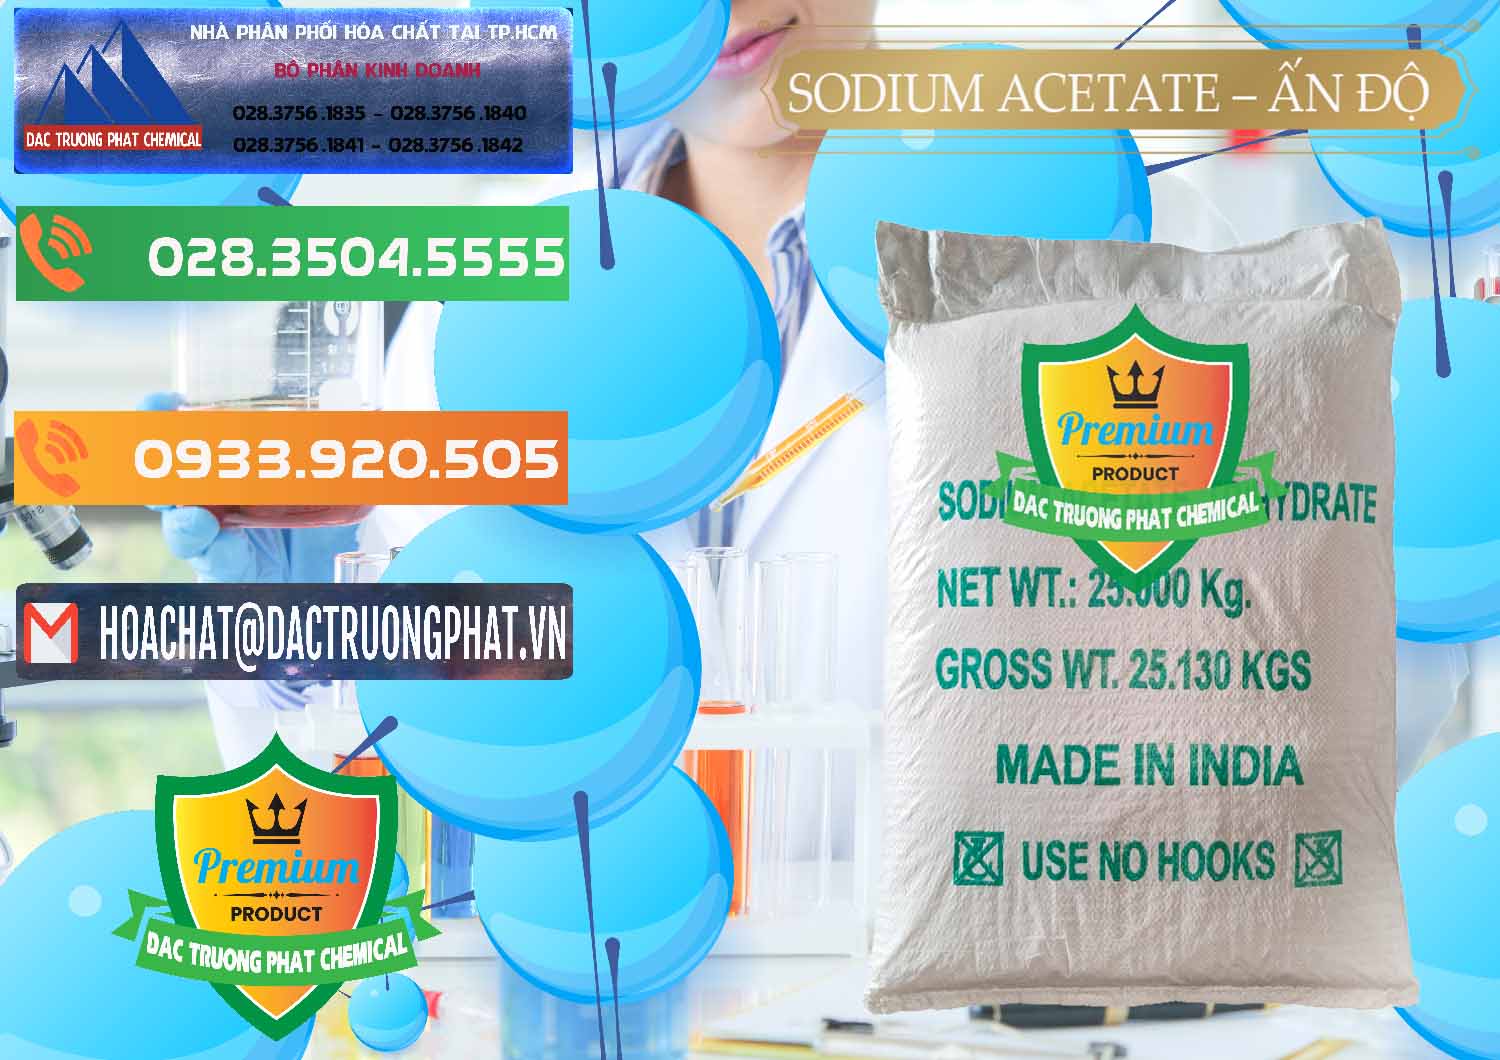 Nơi chuyên nhập khẩu và bán Sodium Acetate - Natri Acetate Ấn Độ India - 0133 - Chuyên kinh doanh ( phân phối ) hóa chất tại TP.HCM - hoachatxulynuoc.com.vn